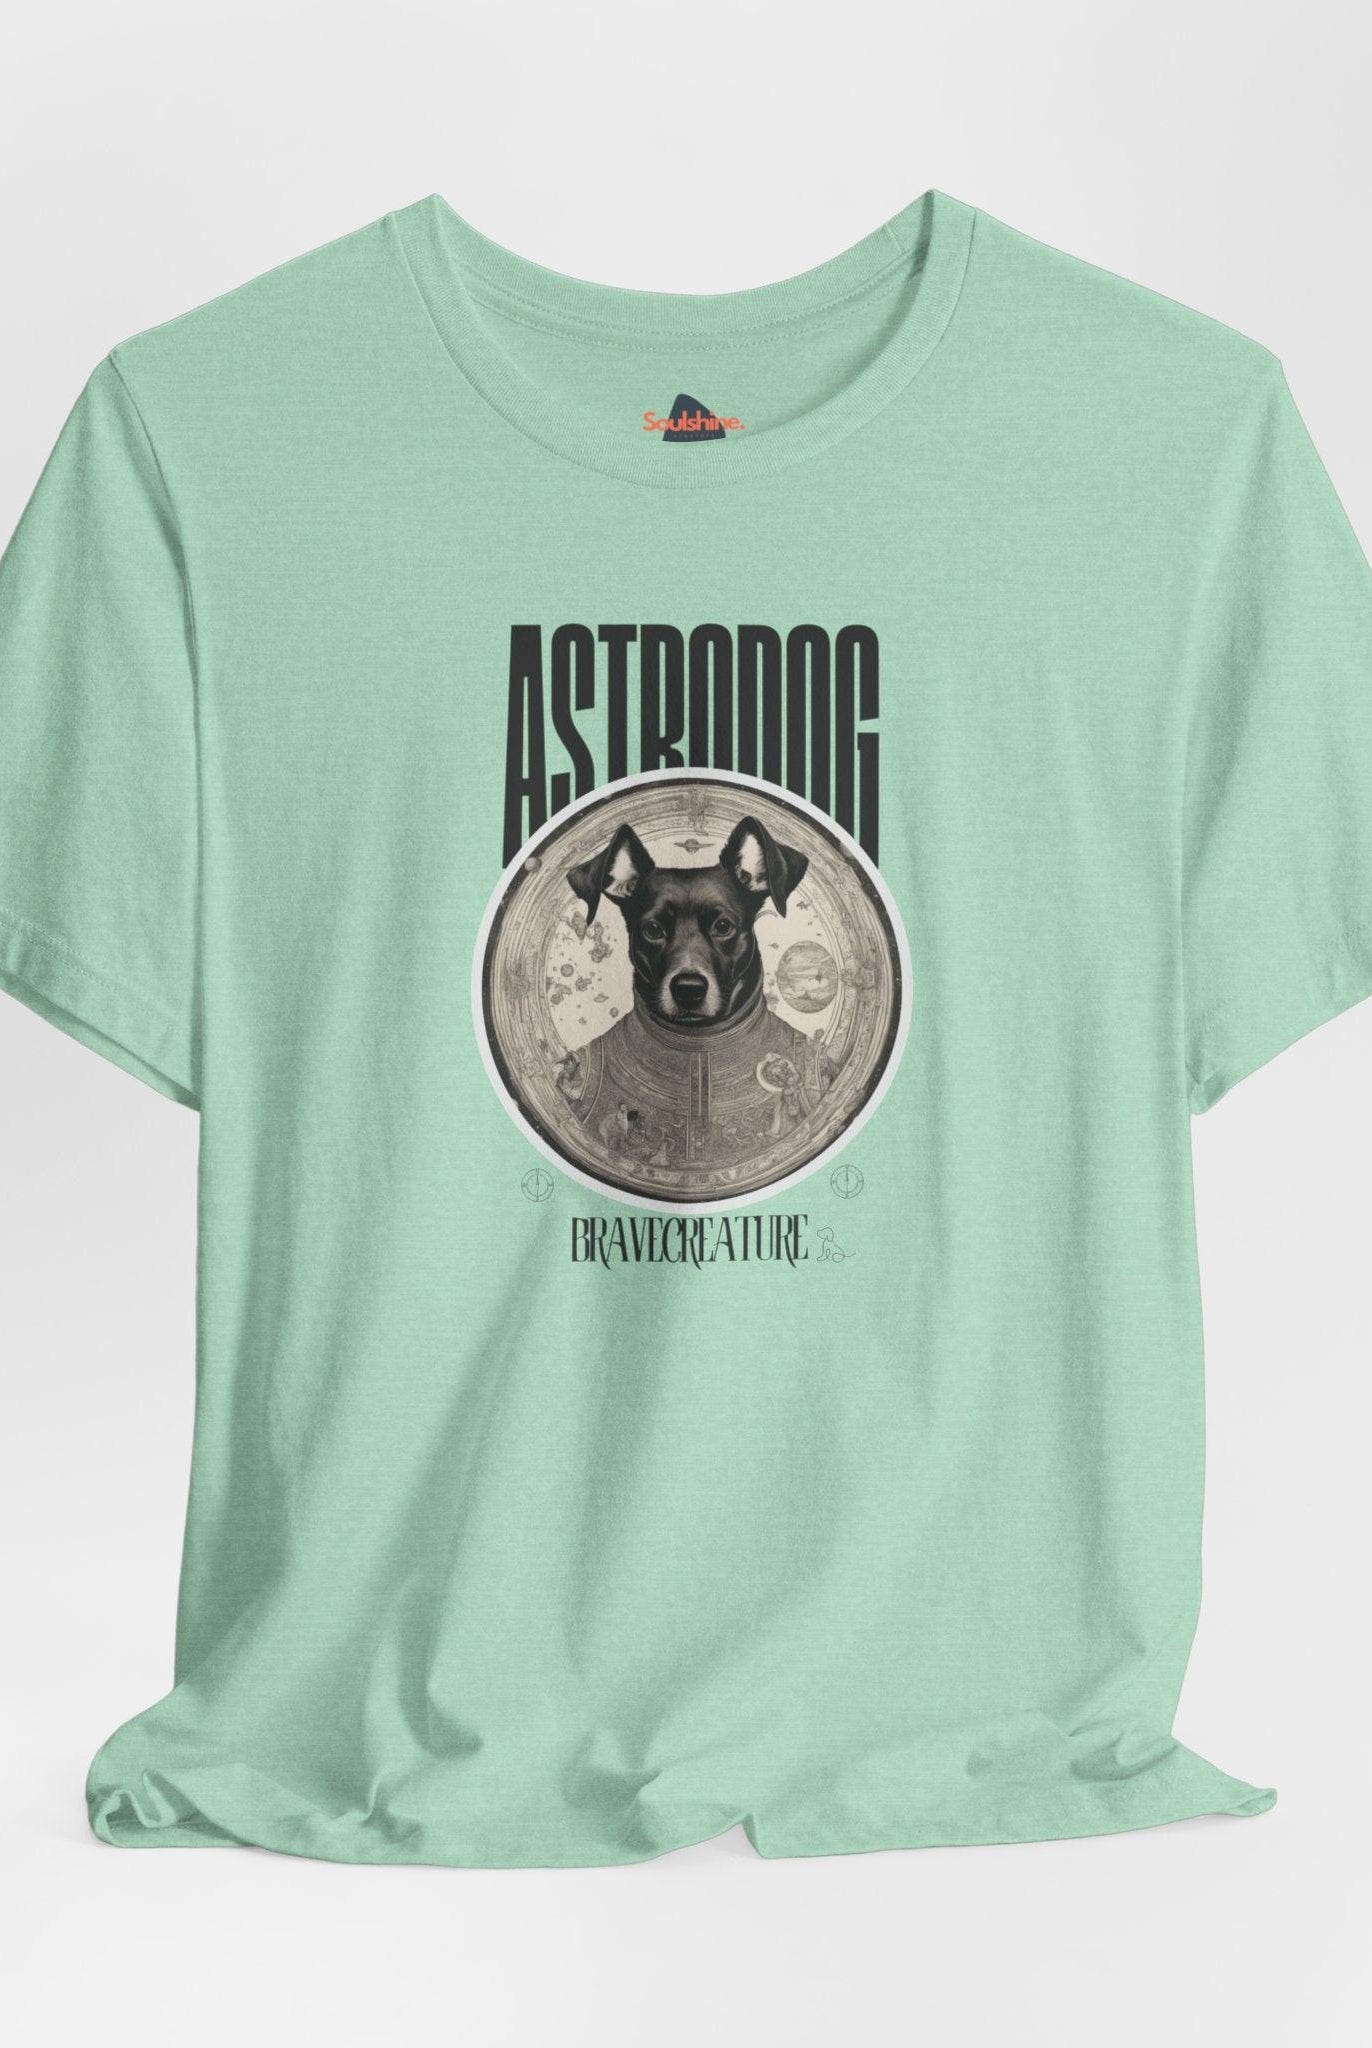 Astrodog - Soulshinecreators - Unisex Jersey Short Sleeve Tee - US - Soulshinecreators